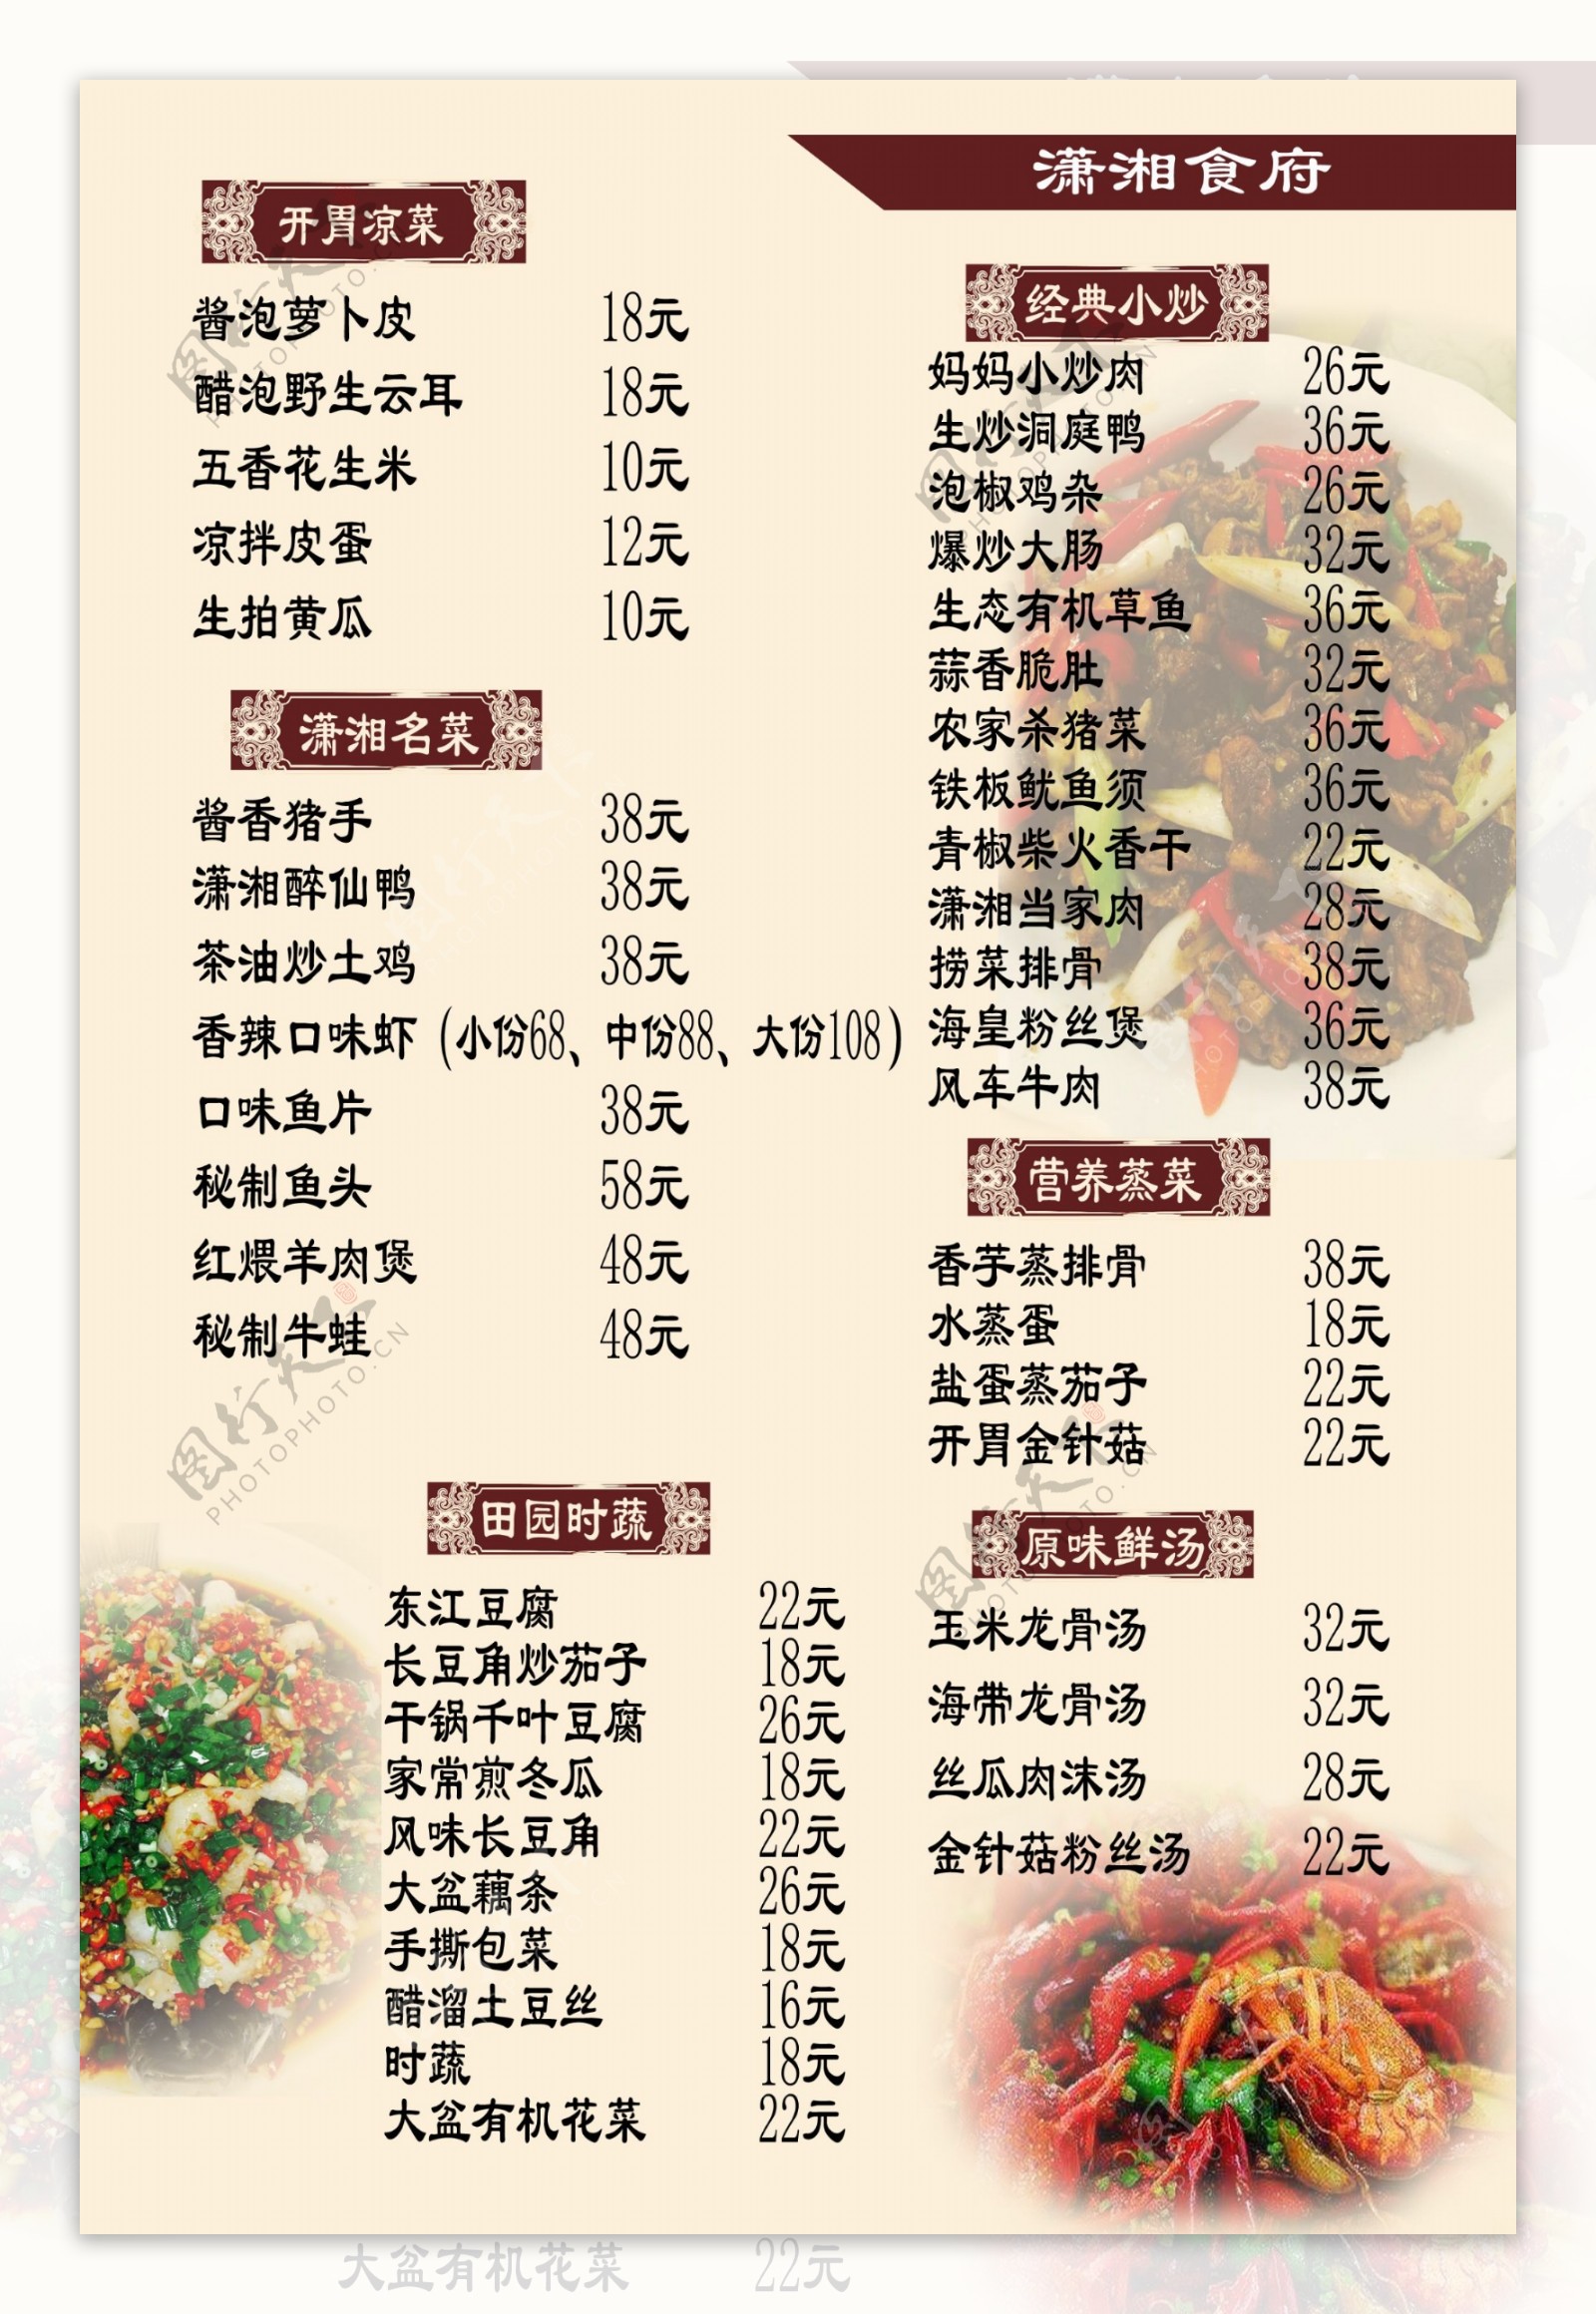 潇湘食府菜单2